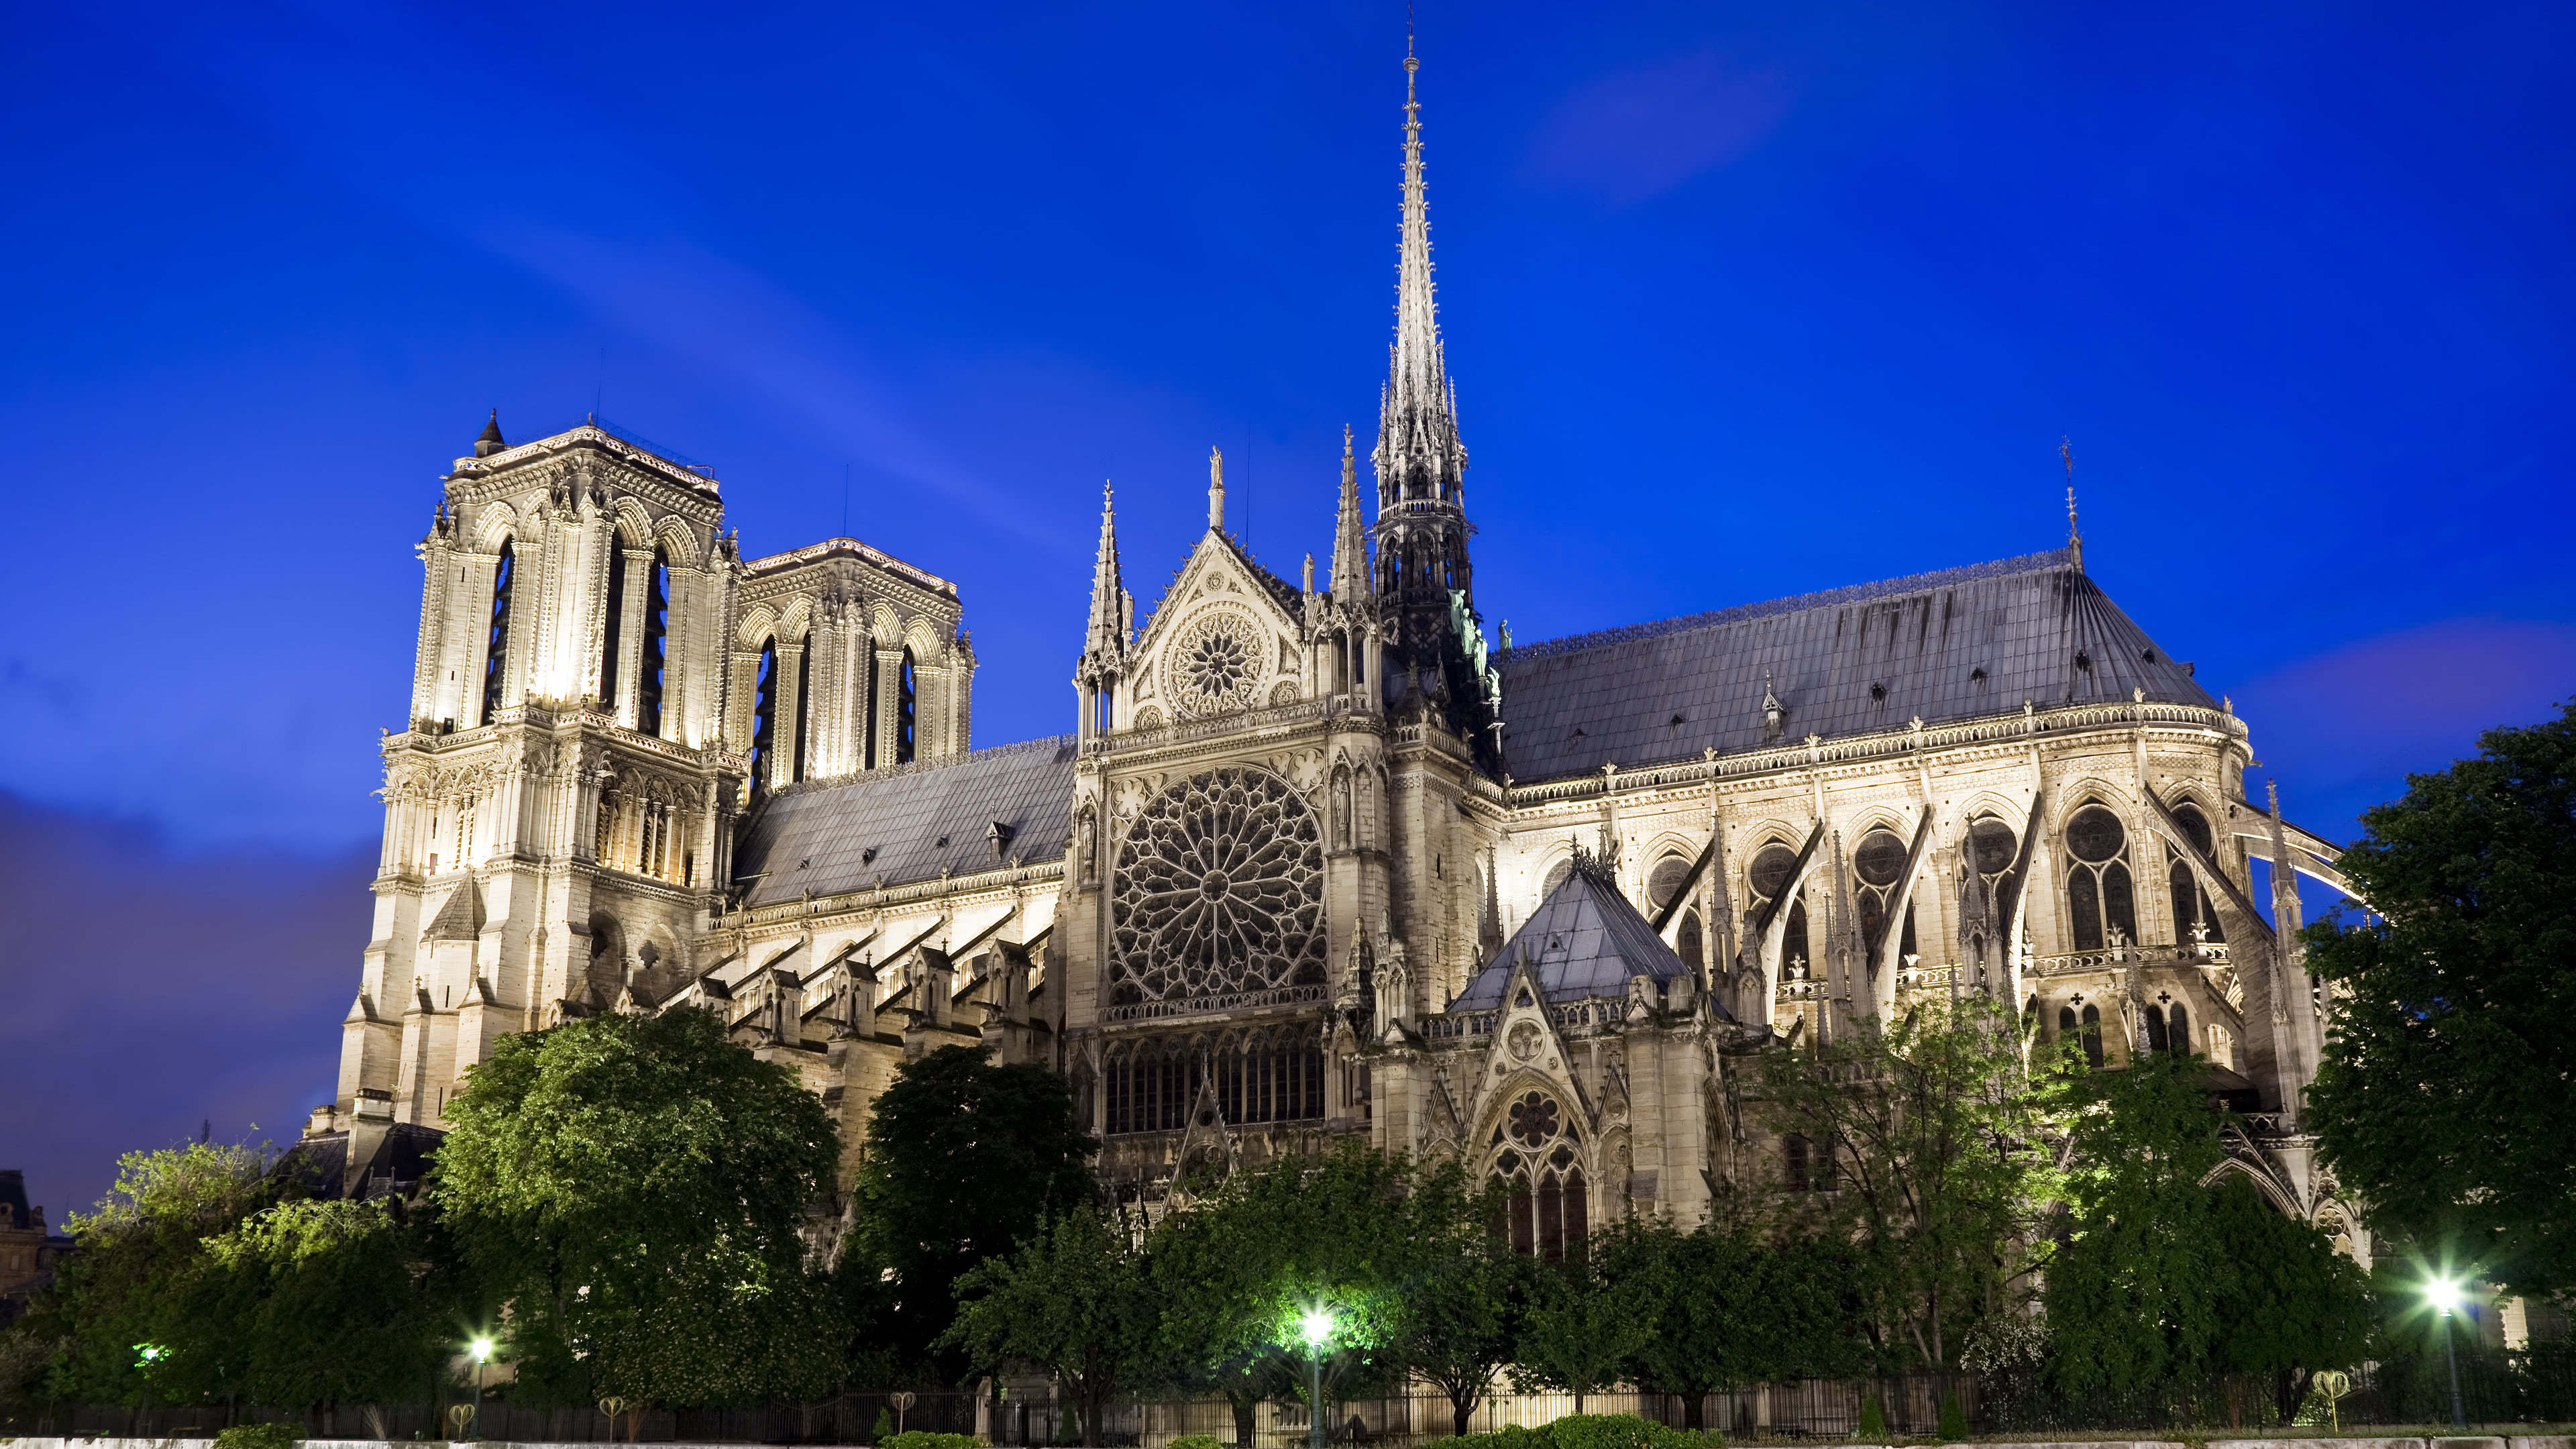 Cathedrale Notre Dame Paris France Uhd 4k Wallpaper - Paris Cathédrale Notre Dame - HD Wallpaper 